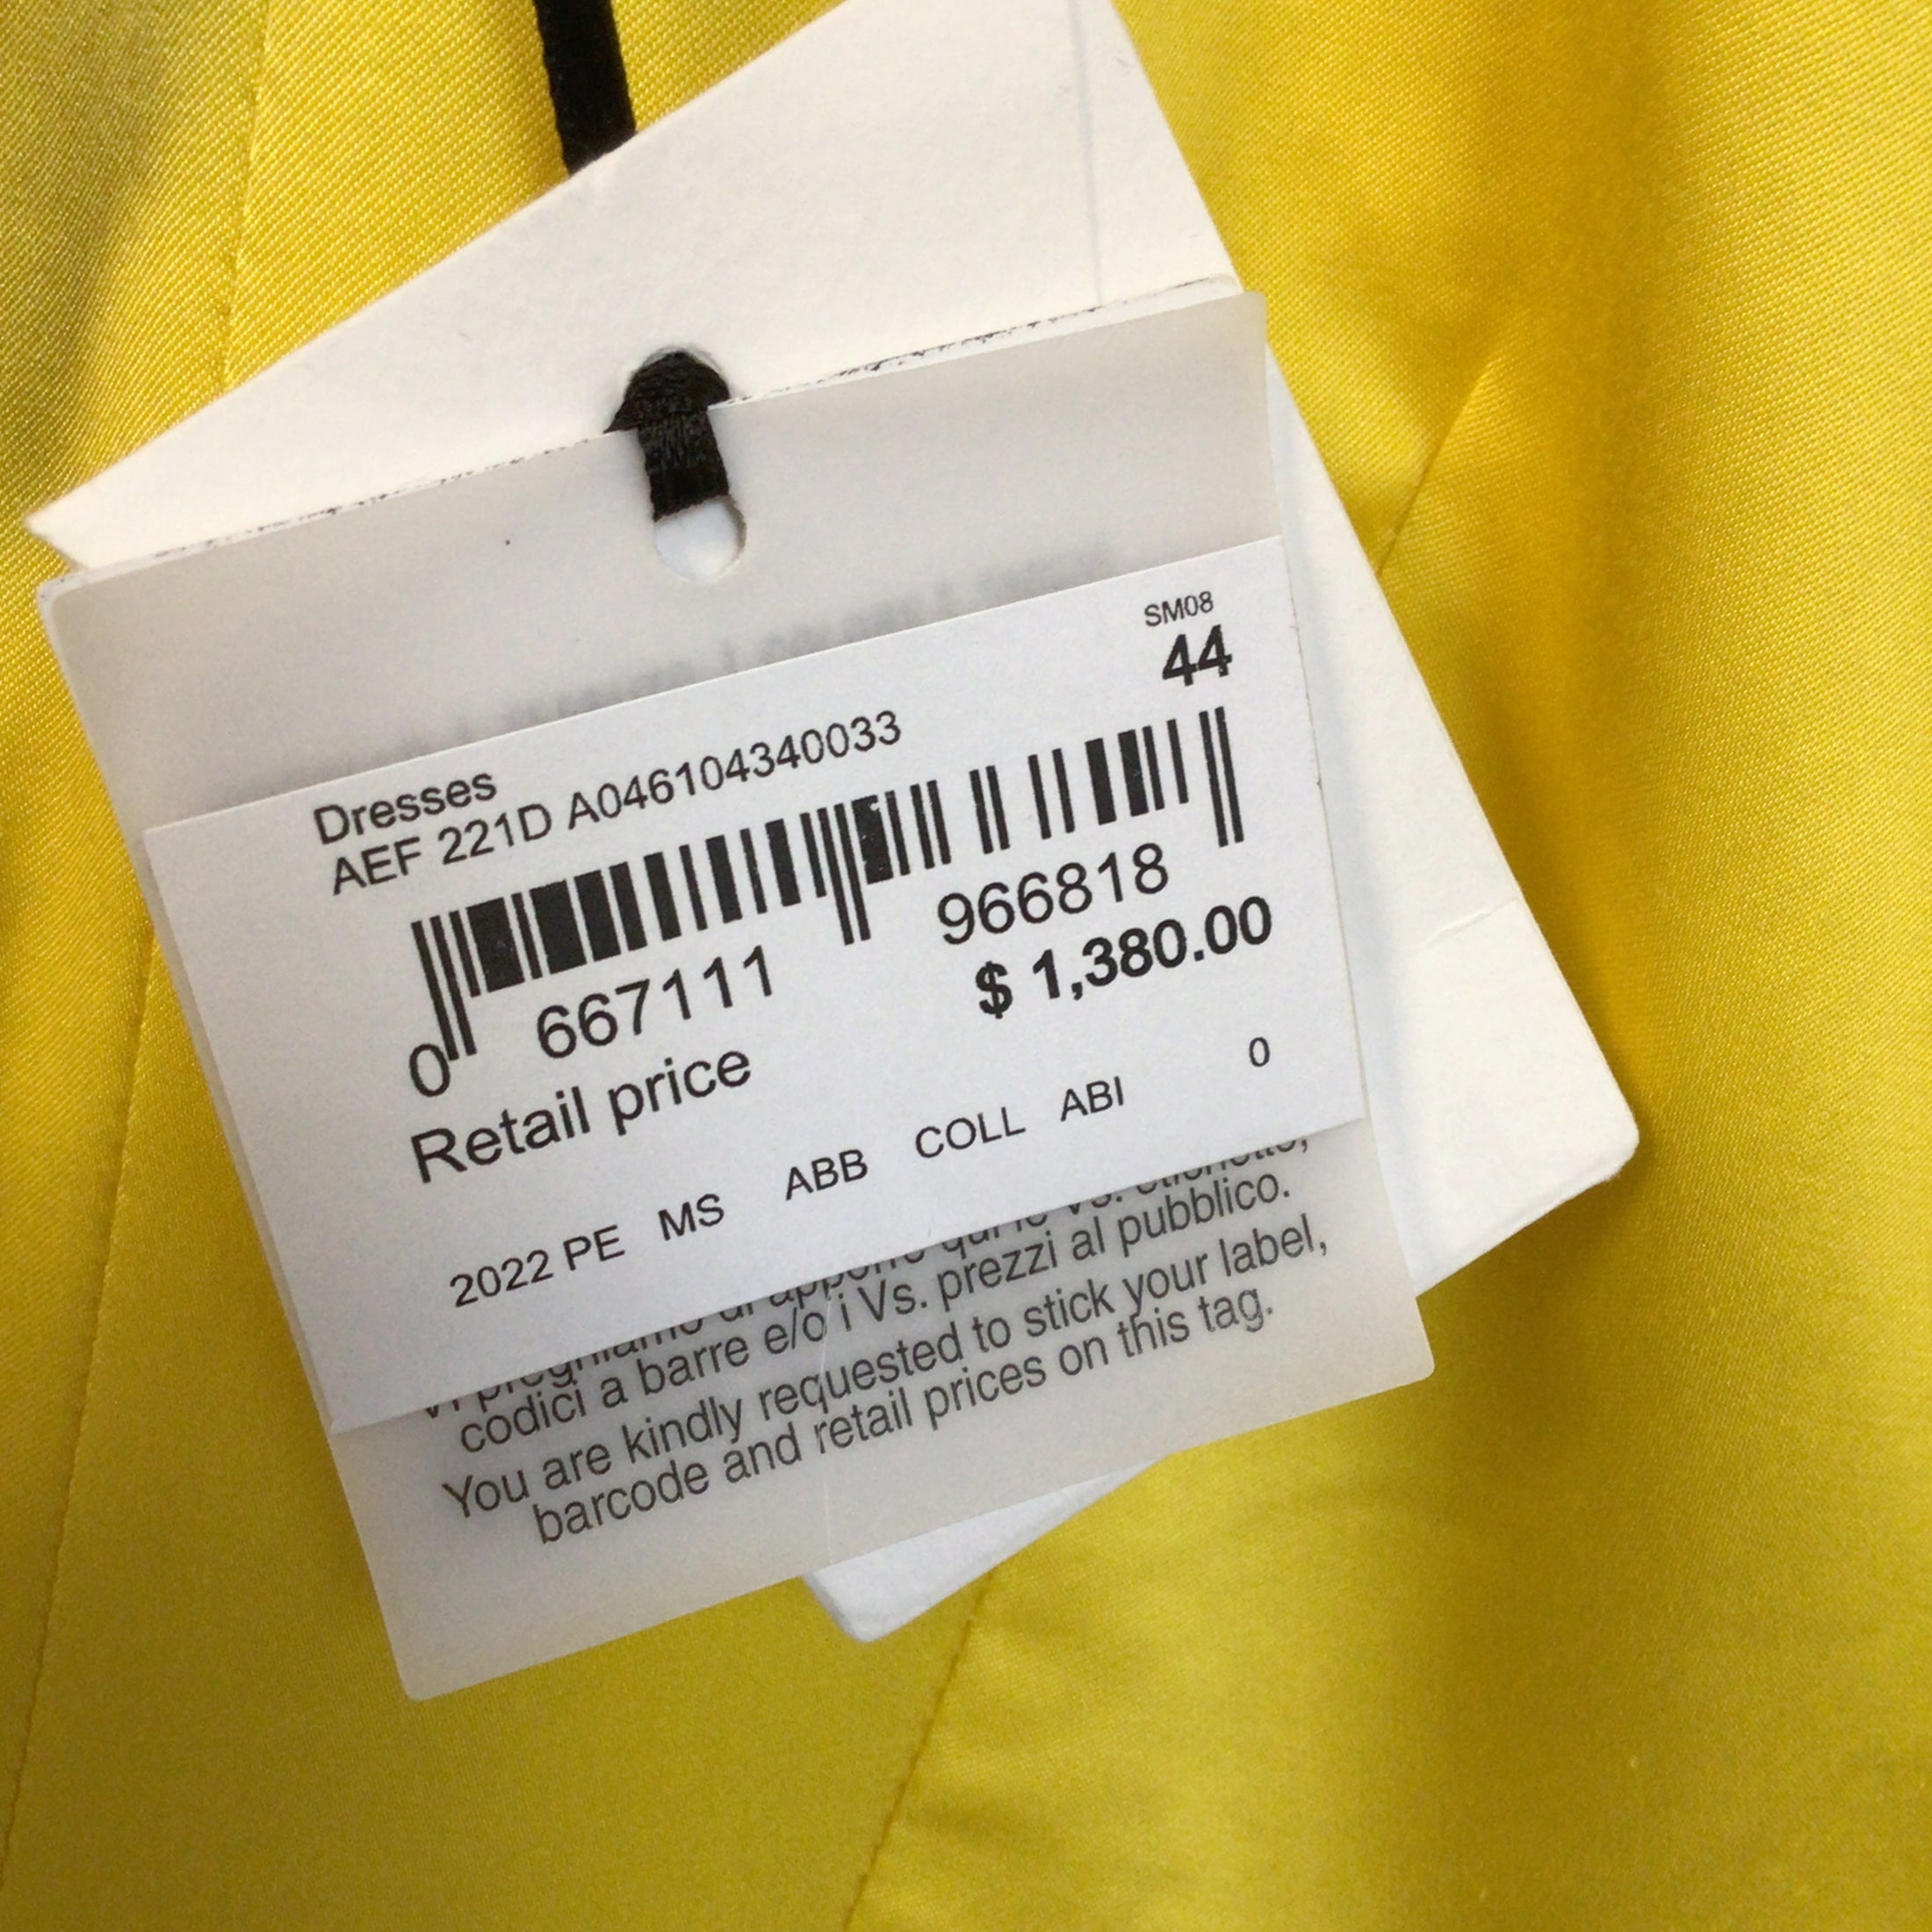 Moschino Couture Yellow Sleeveless Button-front Cotton Midi Dress